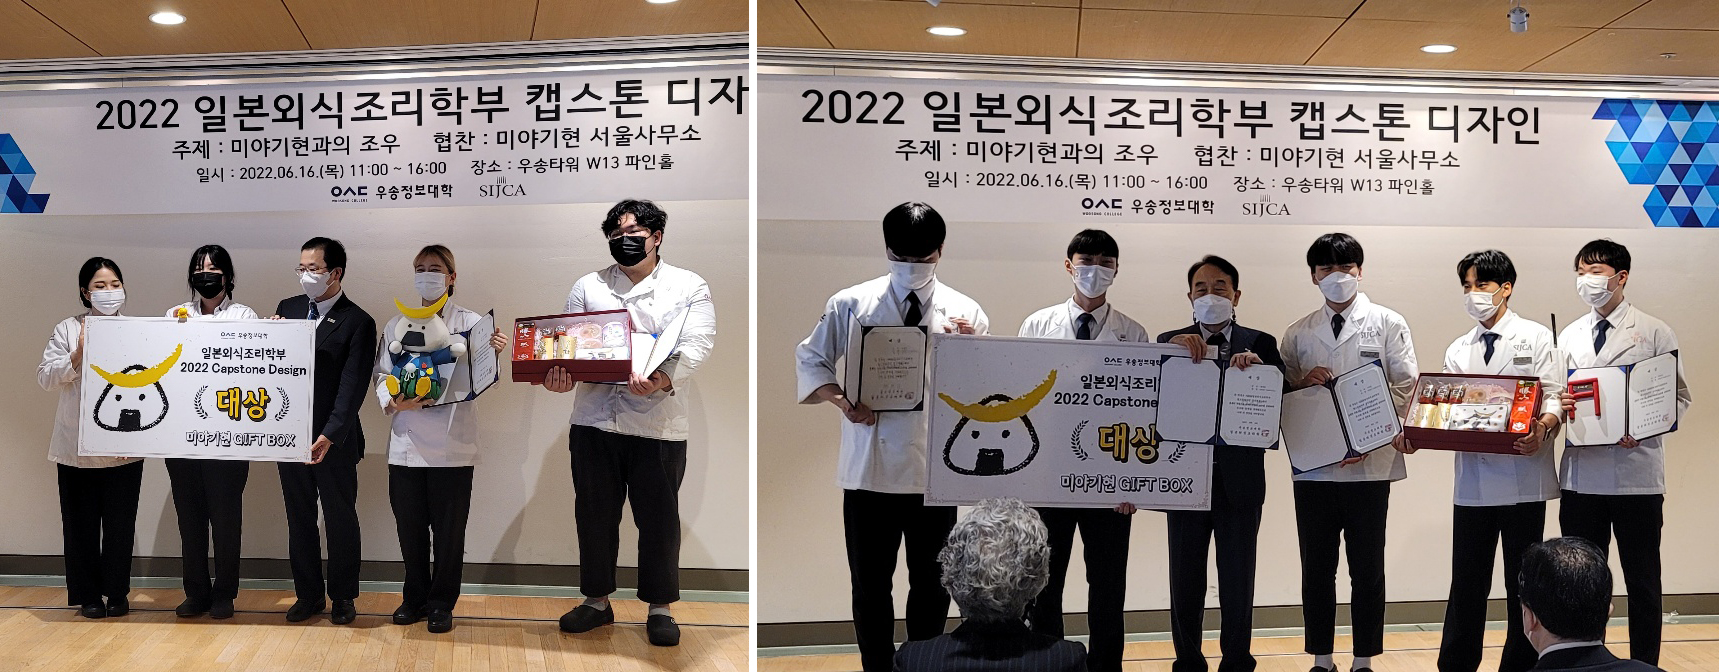 우송정보대학 일본외식조리학부 2022 캡스톤디자인 작품발표회 개최